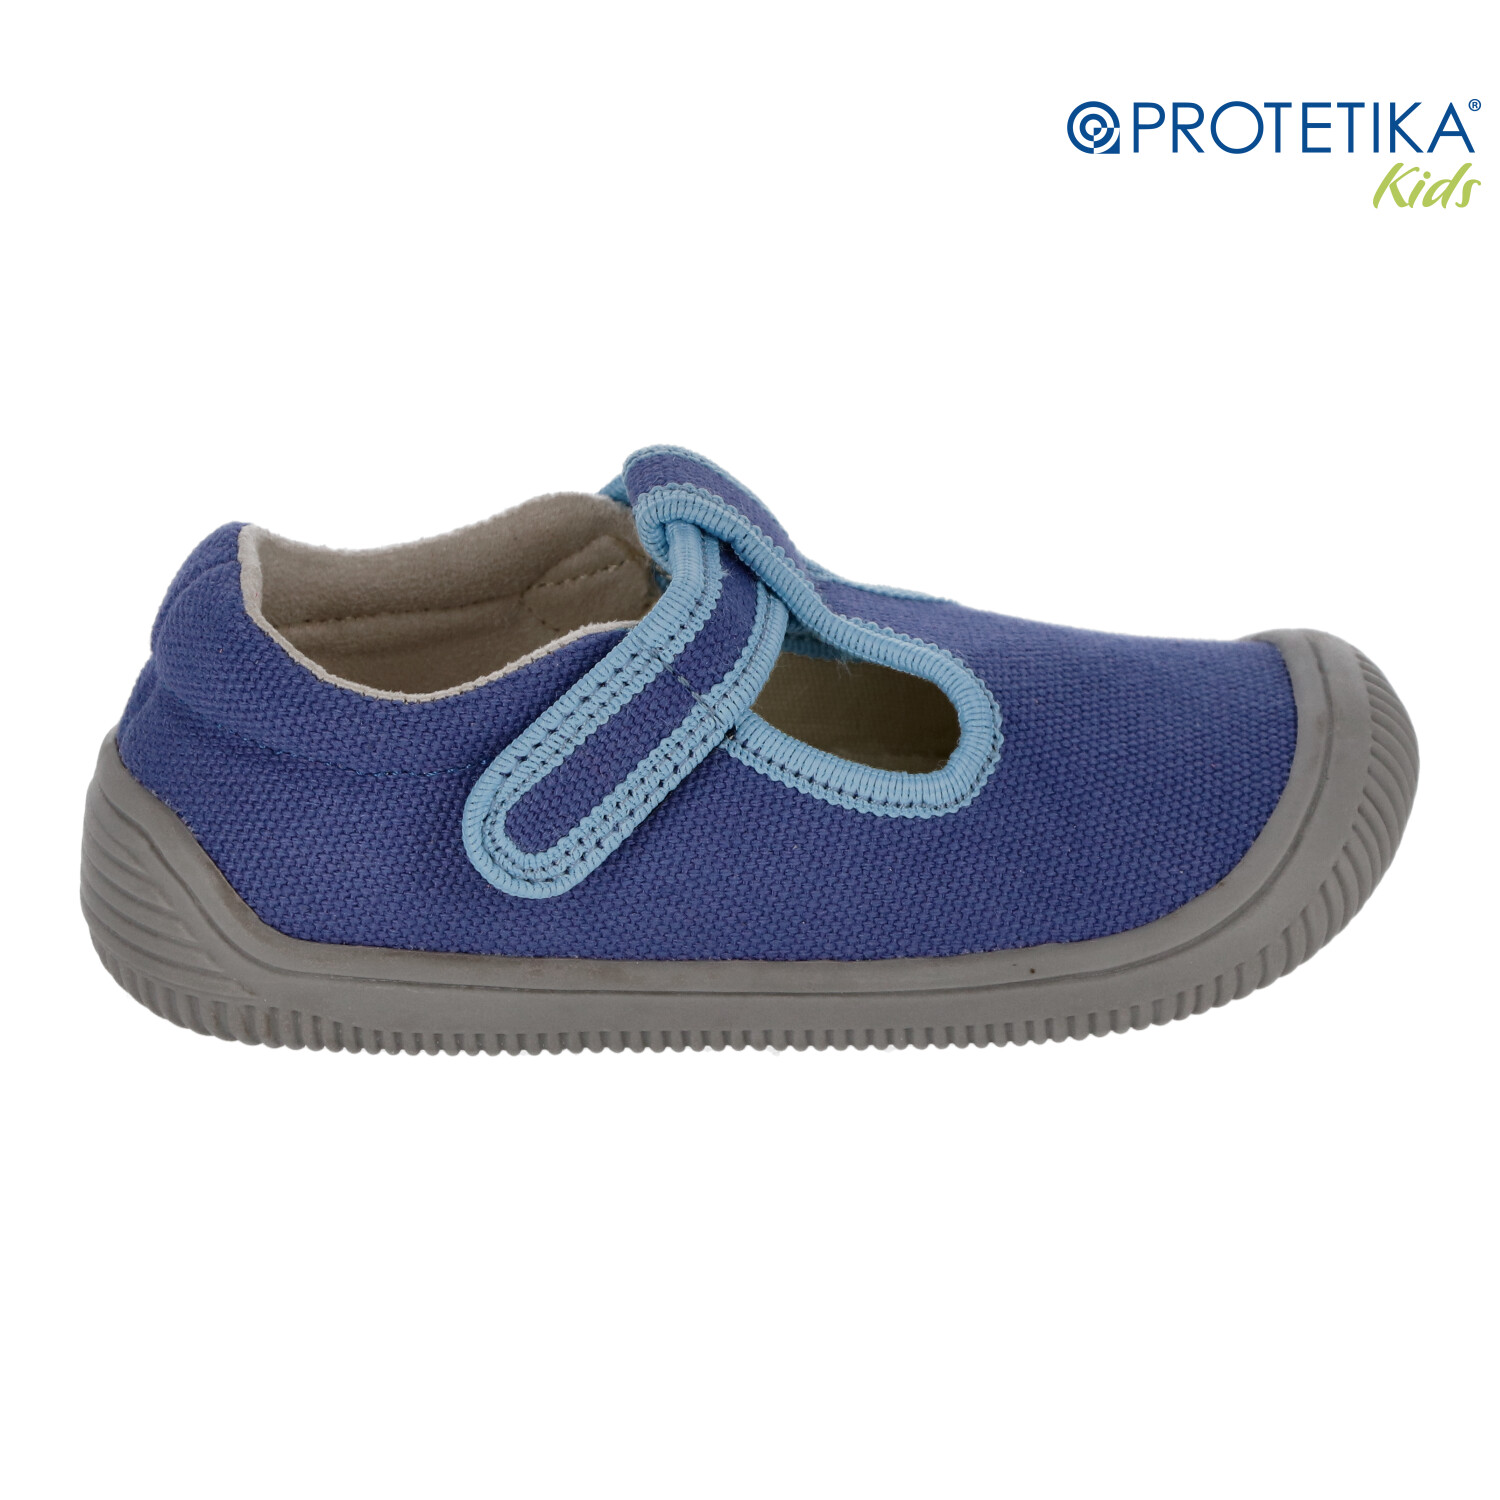 Protetika - barefootové topánky KIRBY blue